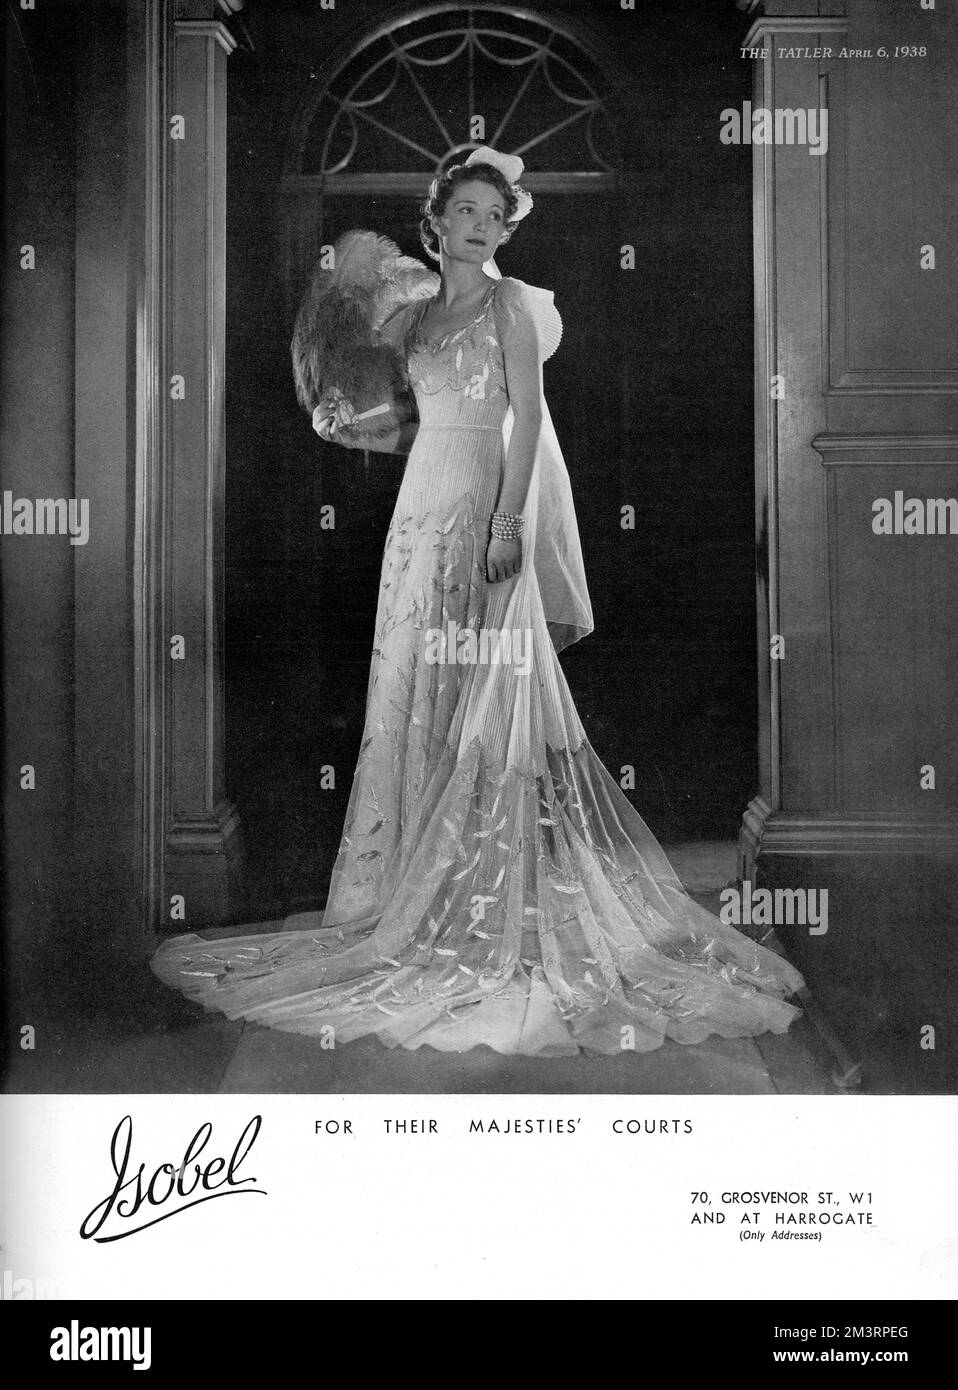 Werbung für Hofkittel, entworfen von Isobel von Grosvenor Street und Harrogate. Datum: 1938 Stockfoto